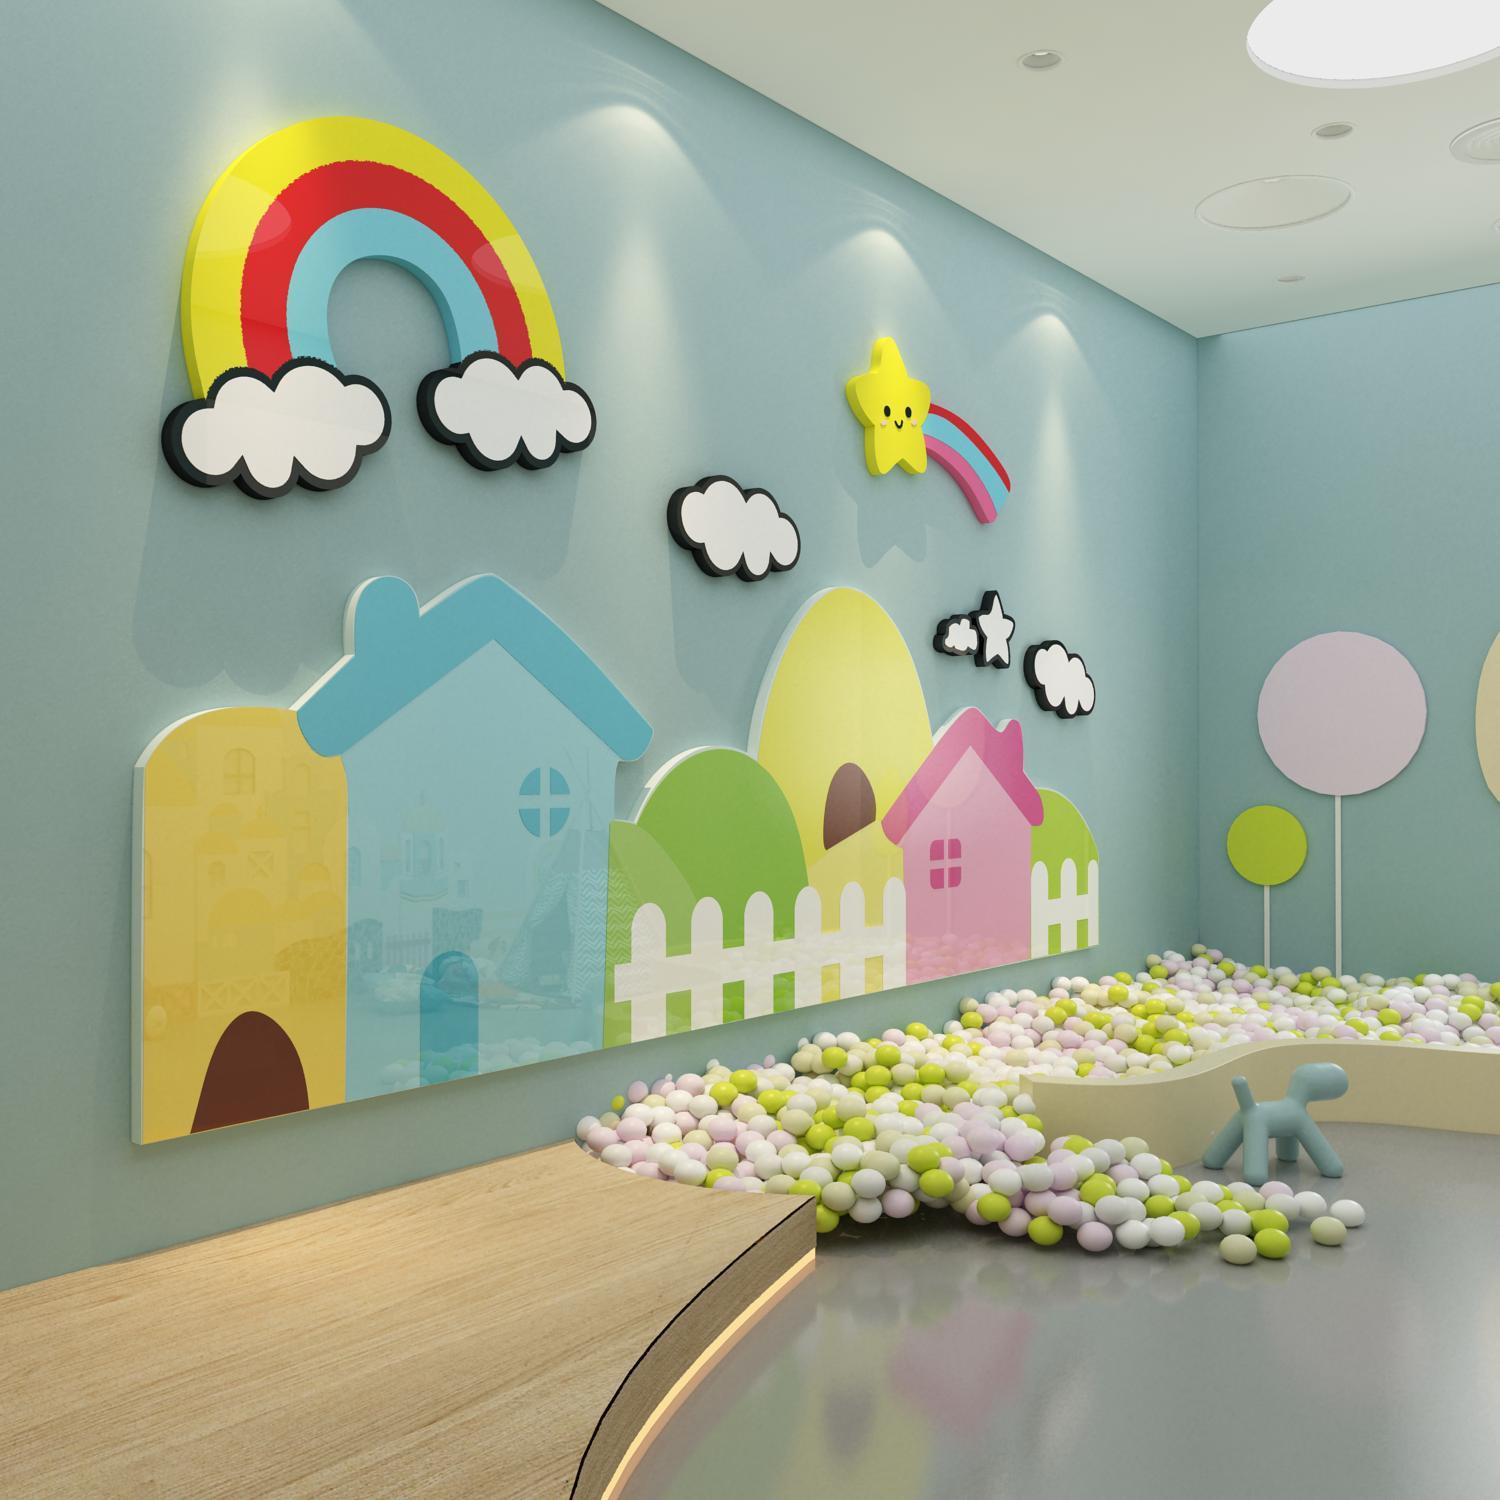 幼儿园墙面装饰走廊环创主题成品教室文化布置设计大厅形象互动贴